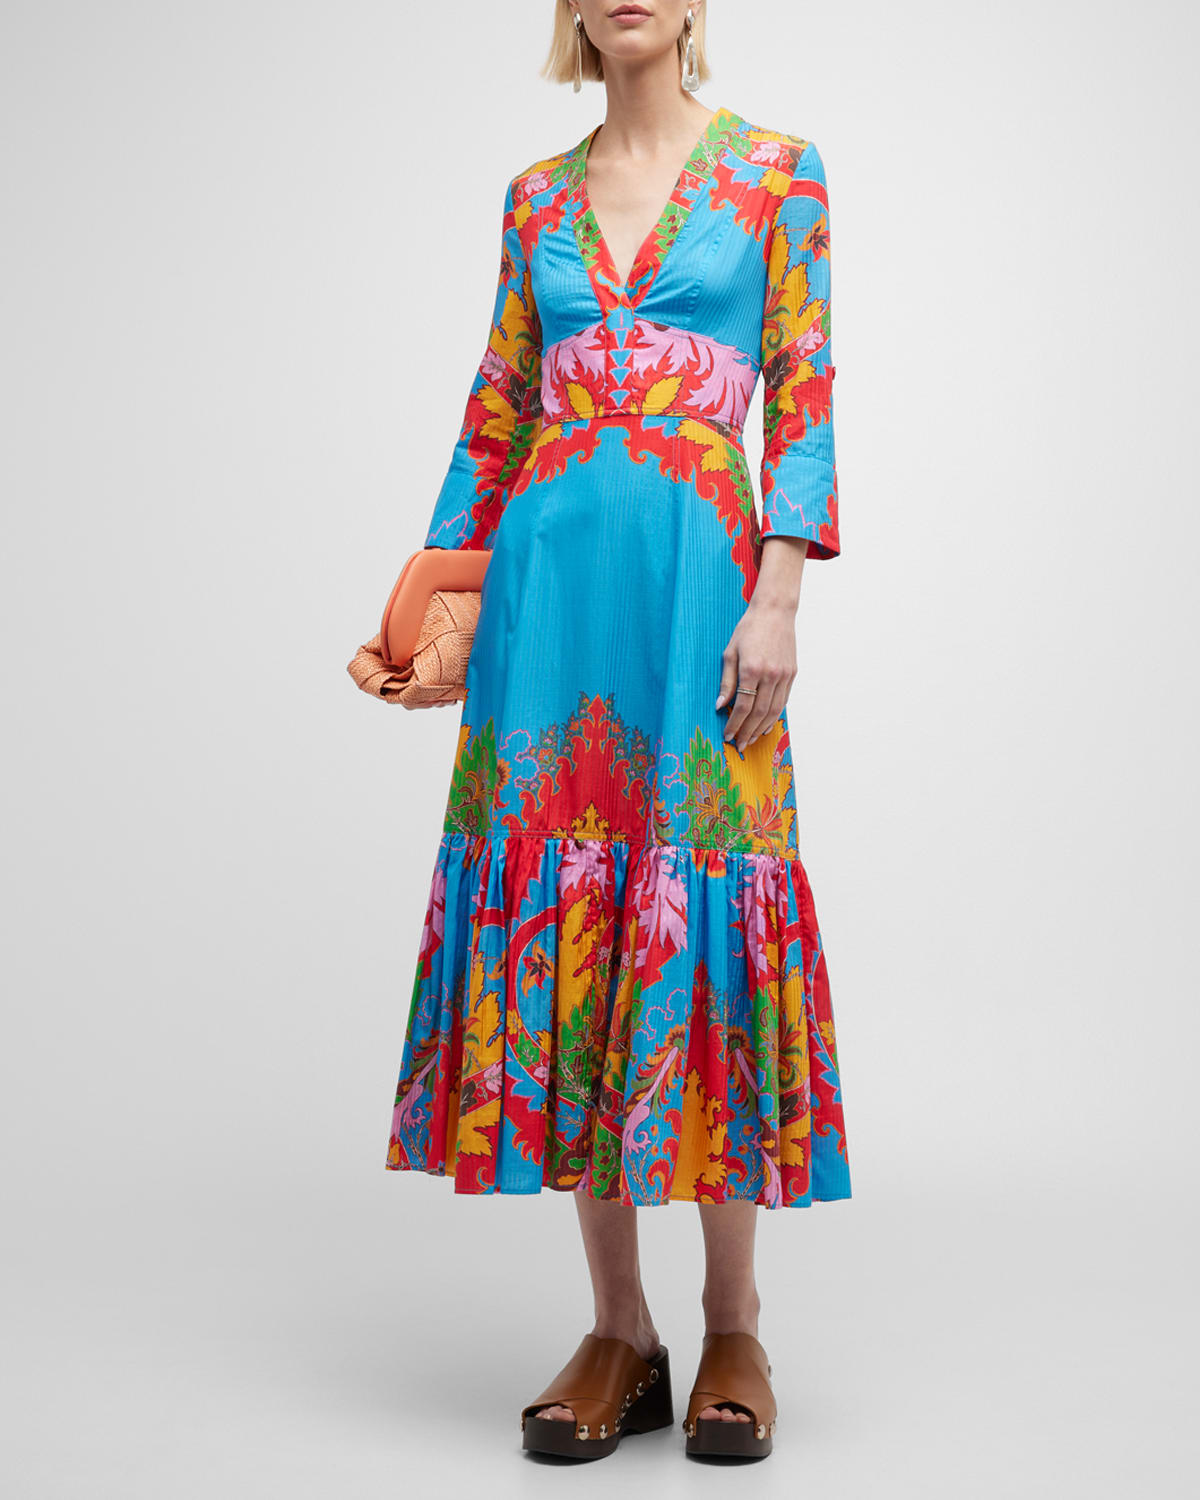 Jacquard Floral Dress | Neiman Marcus